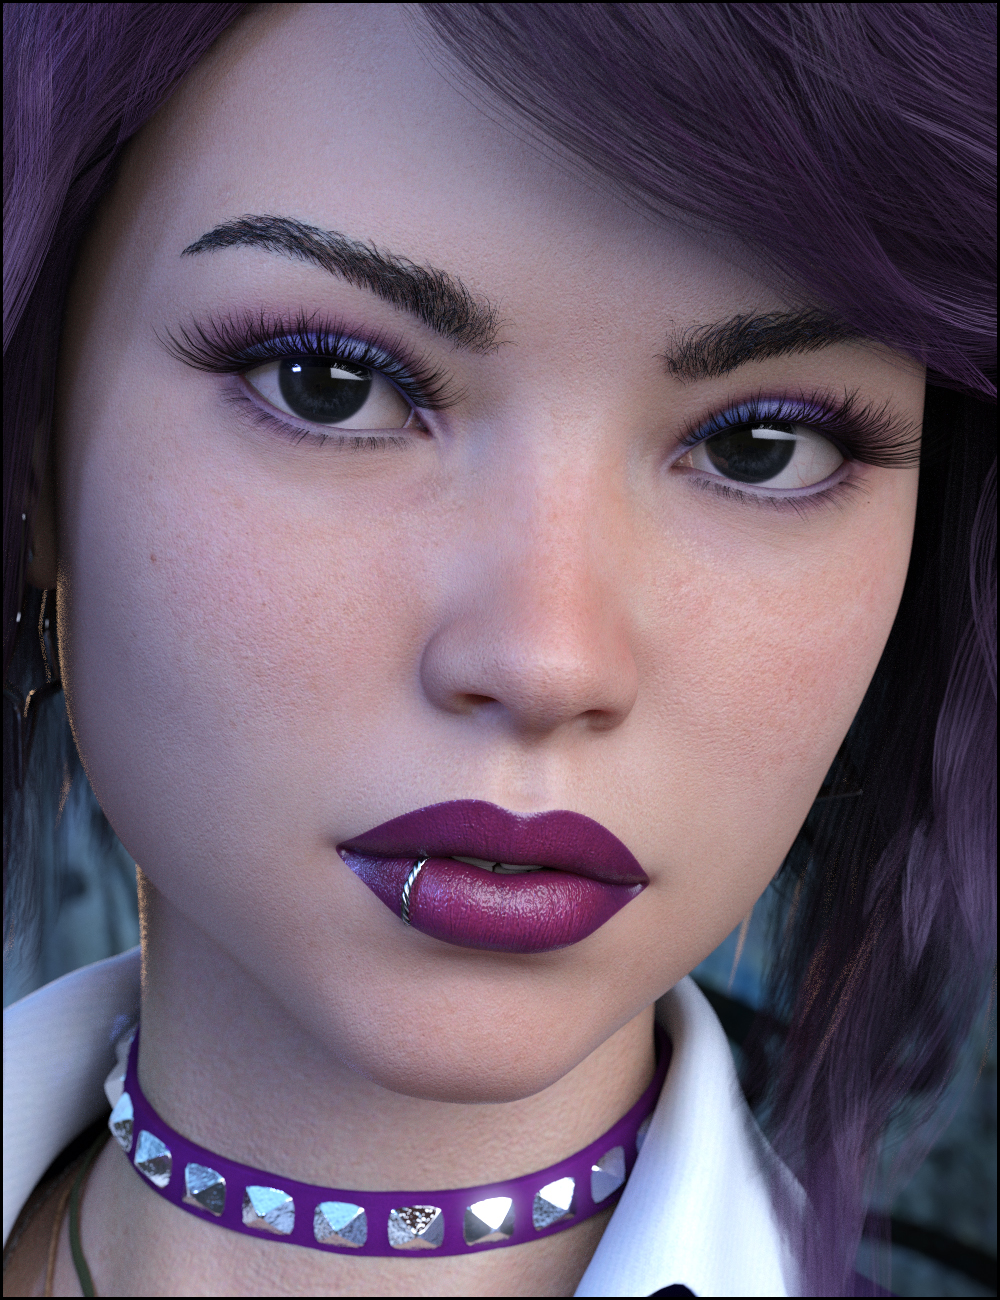 Myriel for Teen Raven 8 by: Jessaii, 3D Models by Daz 3D